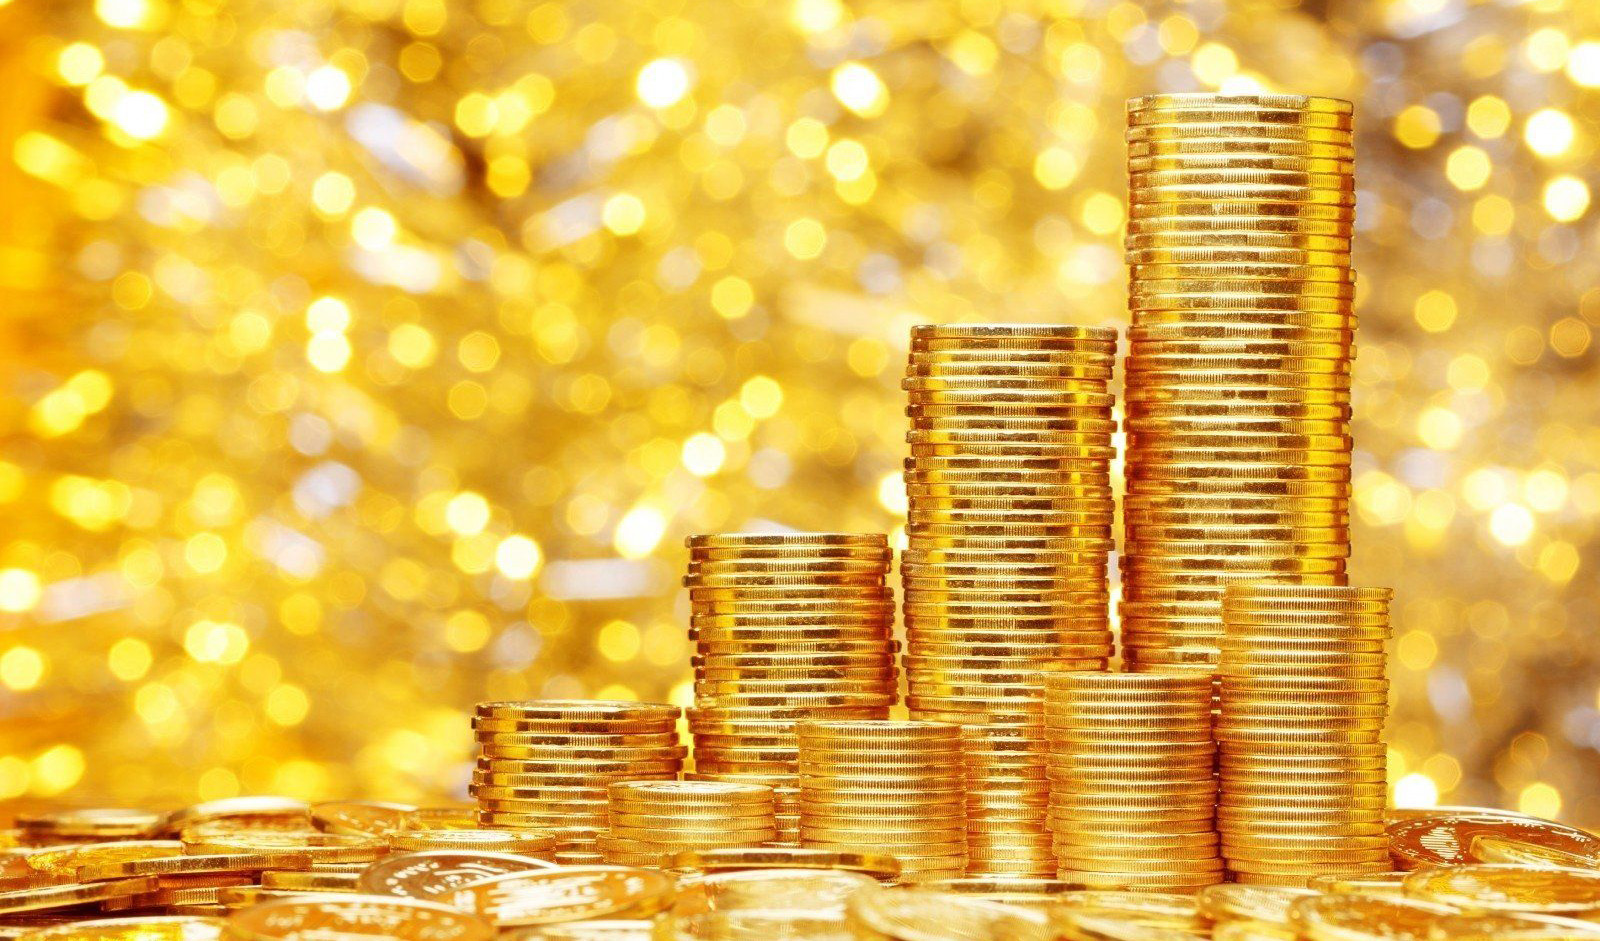 ثبات قیمت انواع سکه و طلا در هفته گذشته